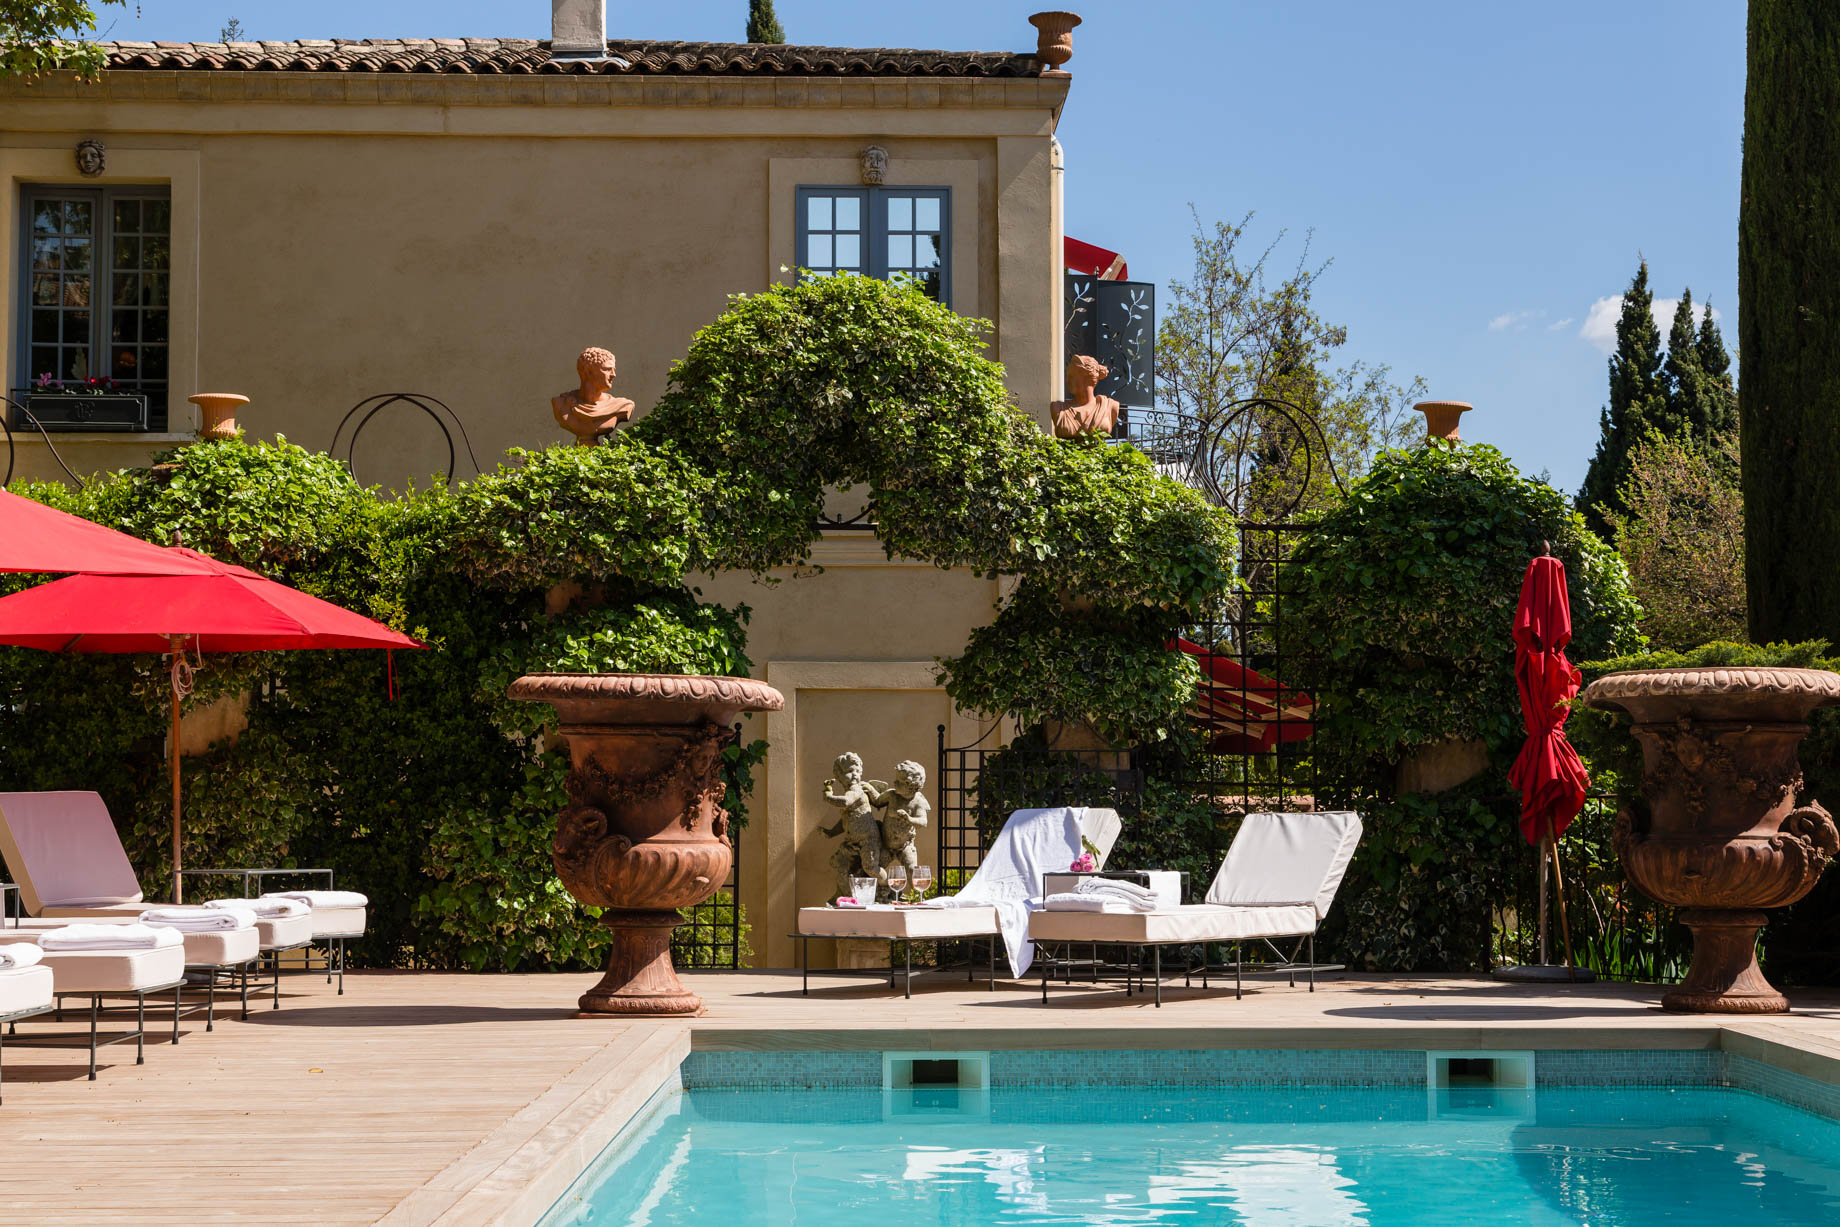 Villa Gallici Relais Châteaux Hotel – Aix-en-Provence, France – Pool Deck